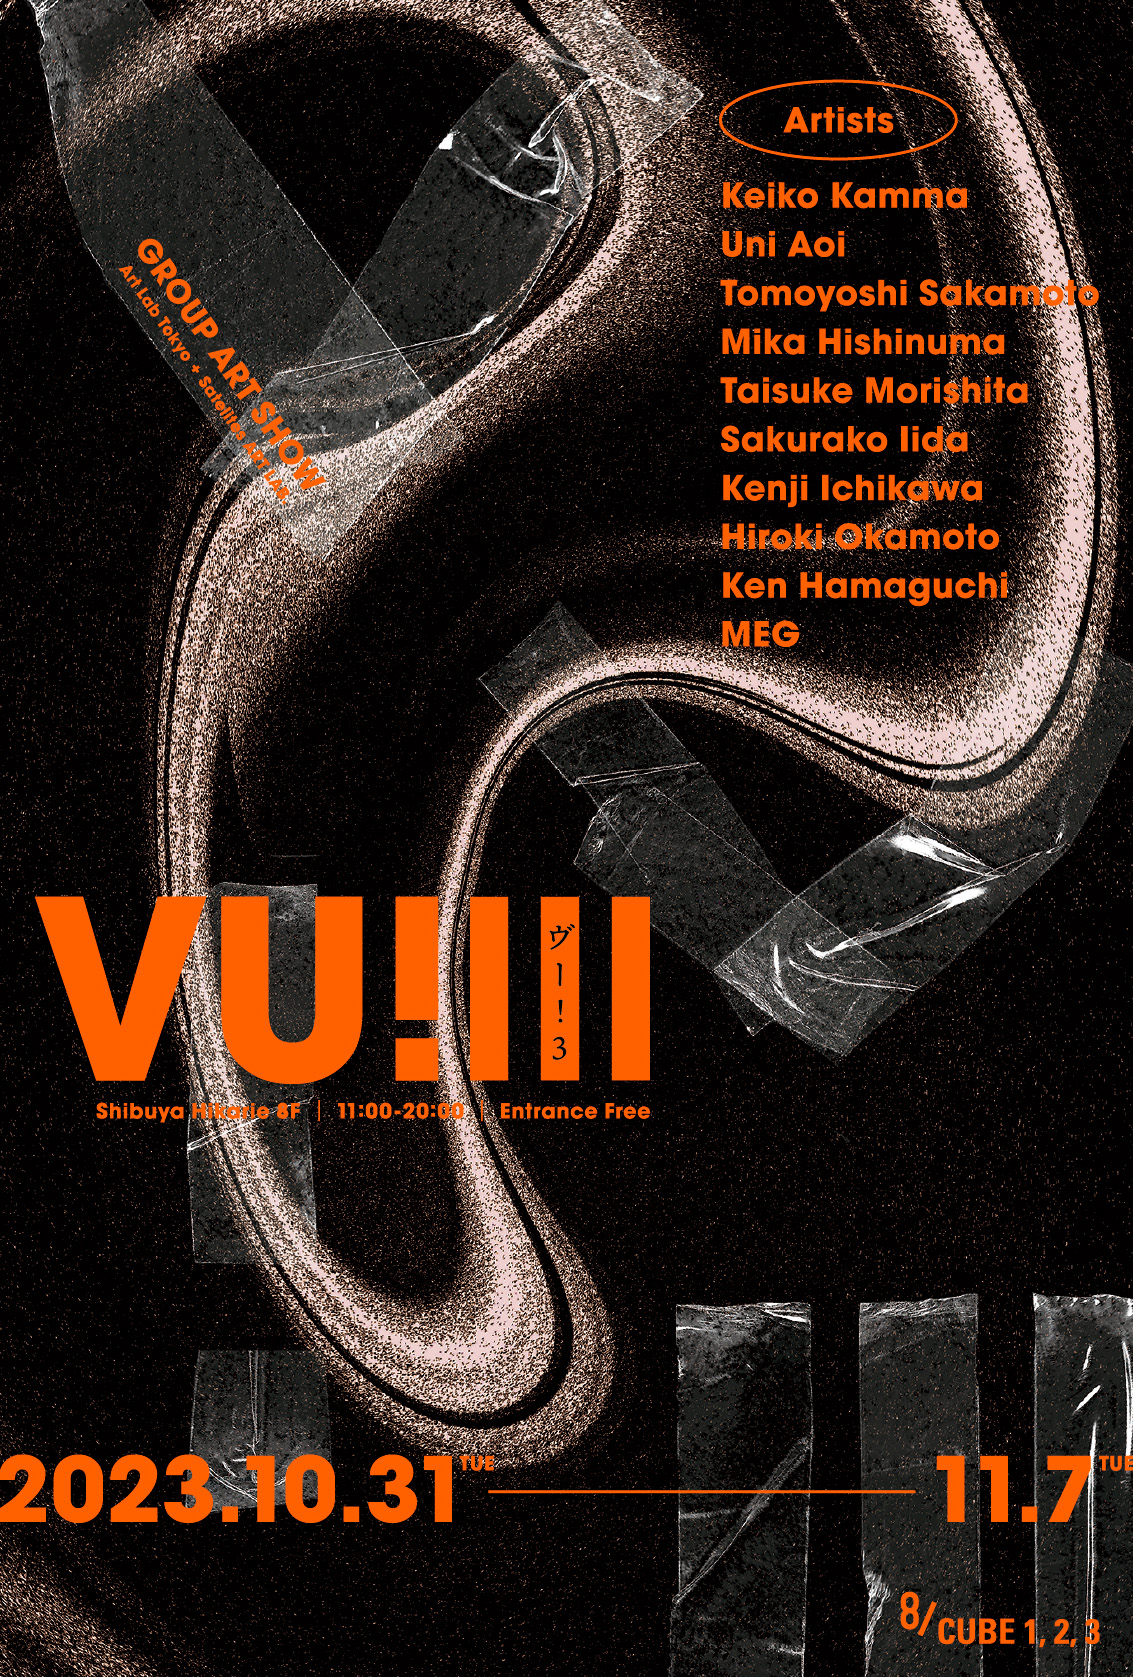 渋谷ヒカリエ8F 8/CUBE1,2,3にてサテライツアートラボとアートラボトーキョーによるグループ展「VU!3」(ヴー!3)のポスター